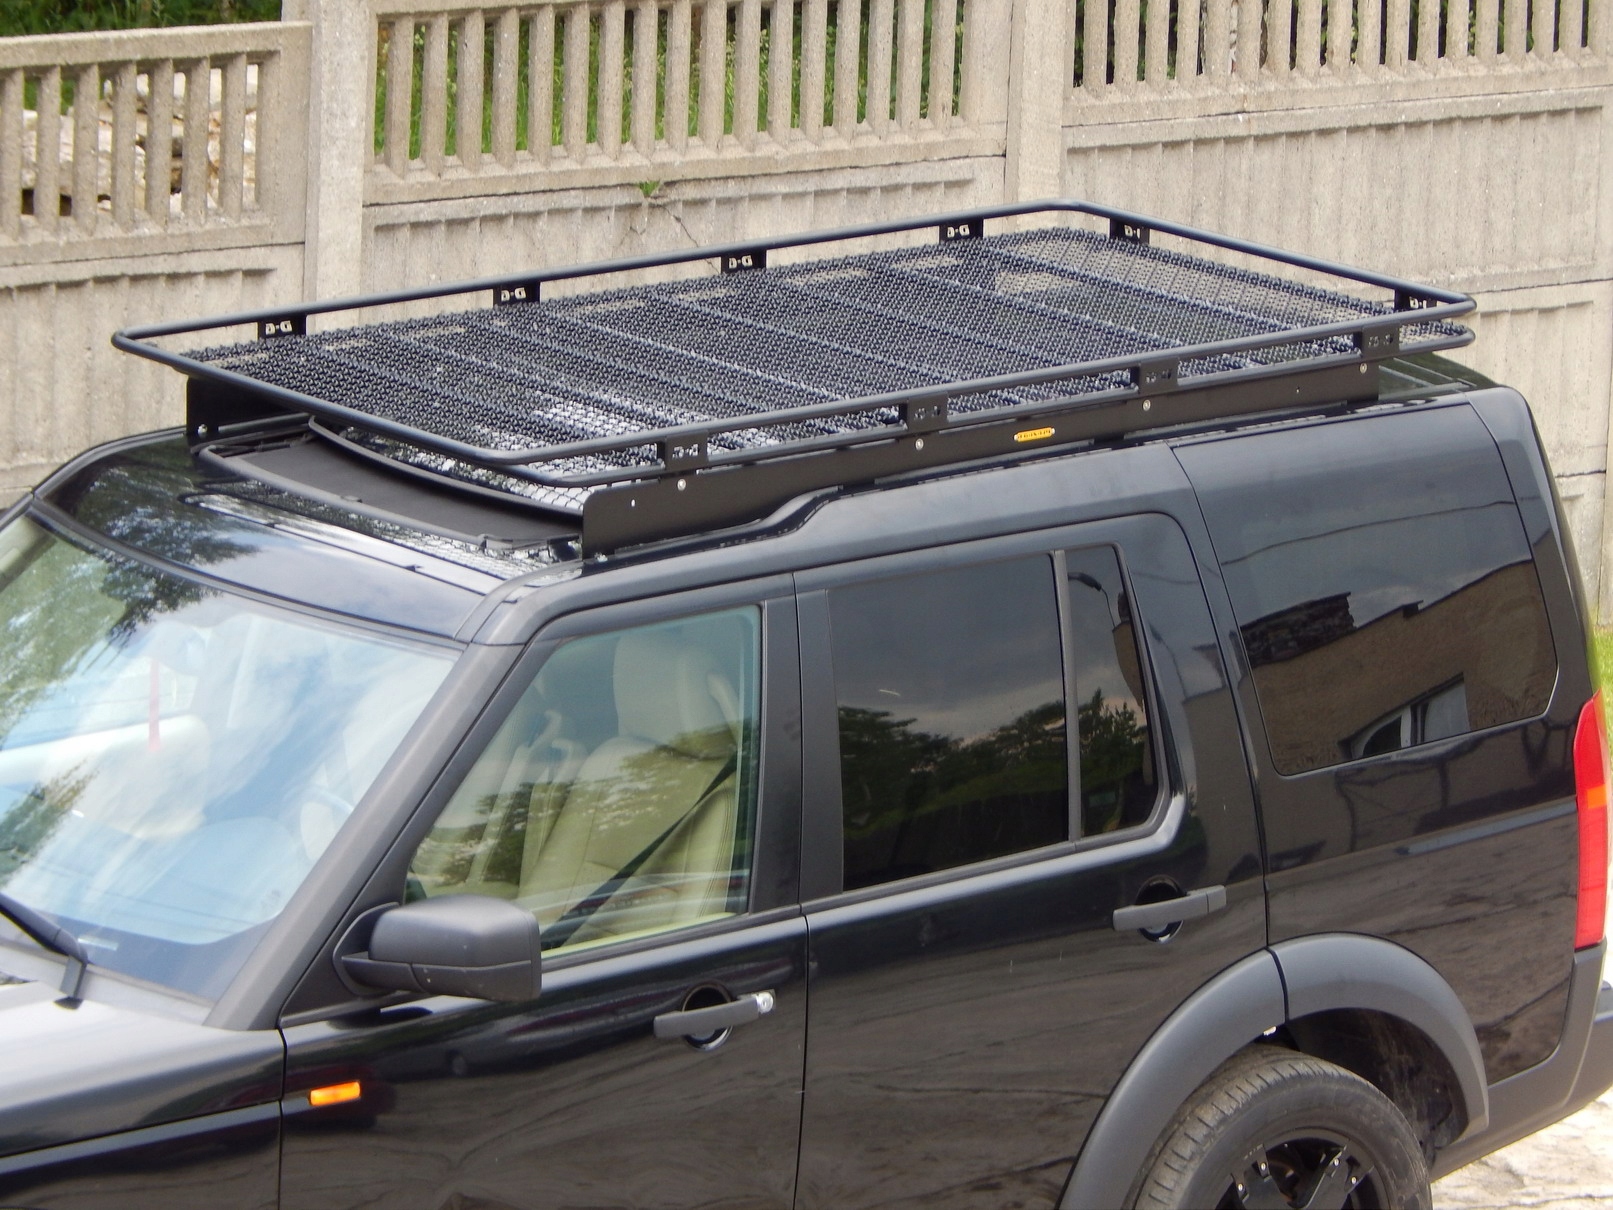 Дискавери крыша. Экспедиционный багажник Land Rover Discovery IV. Land Rover Discovery 3 багажник на крышу. Ленд Ровер Дискавери 3 багажник на крышу. Land Rover Discovery 4 экспедиционный багажник.